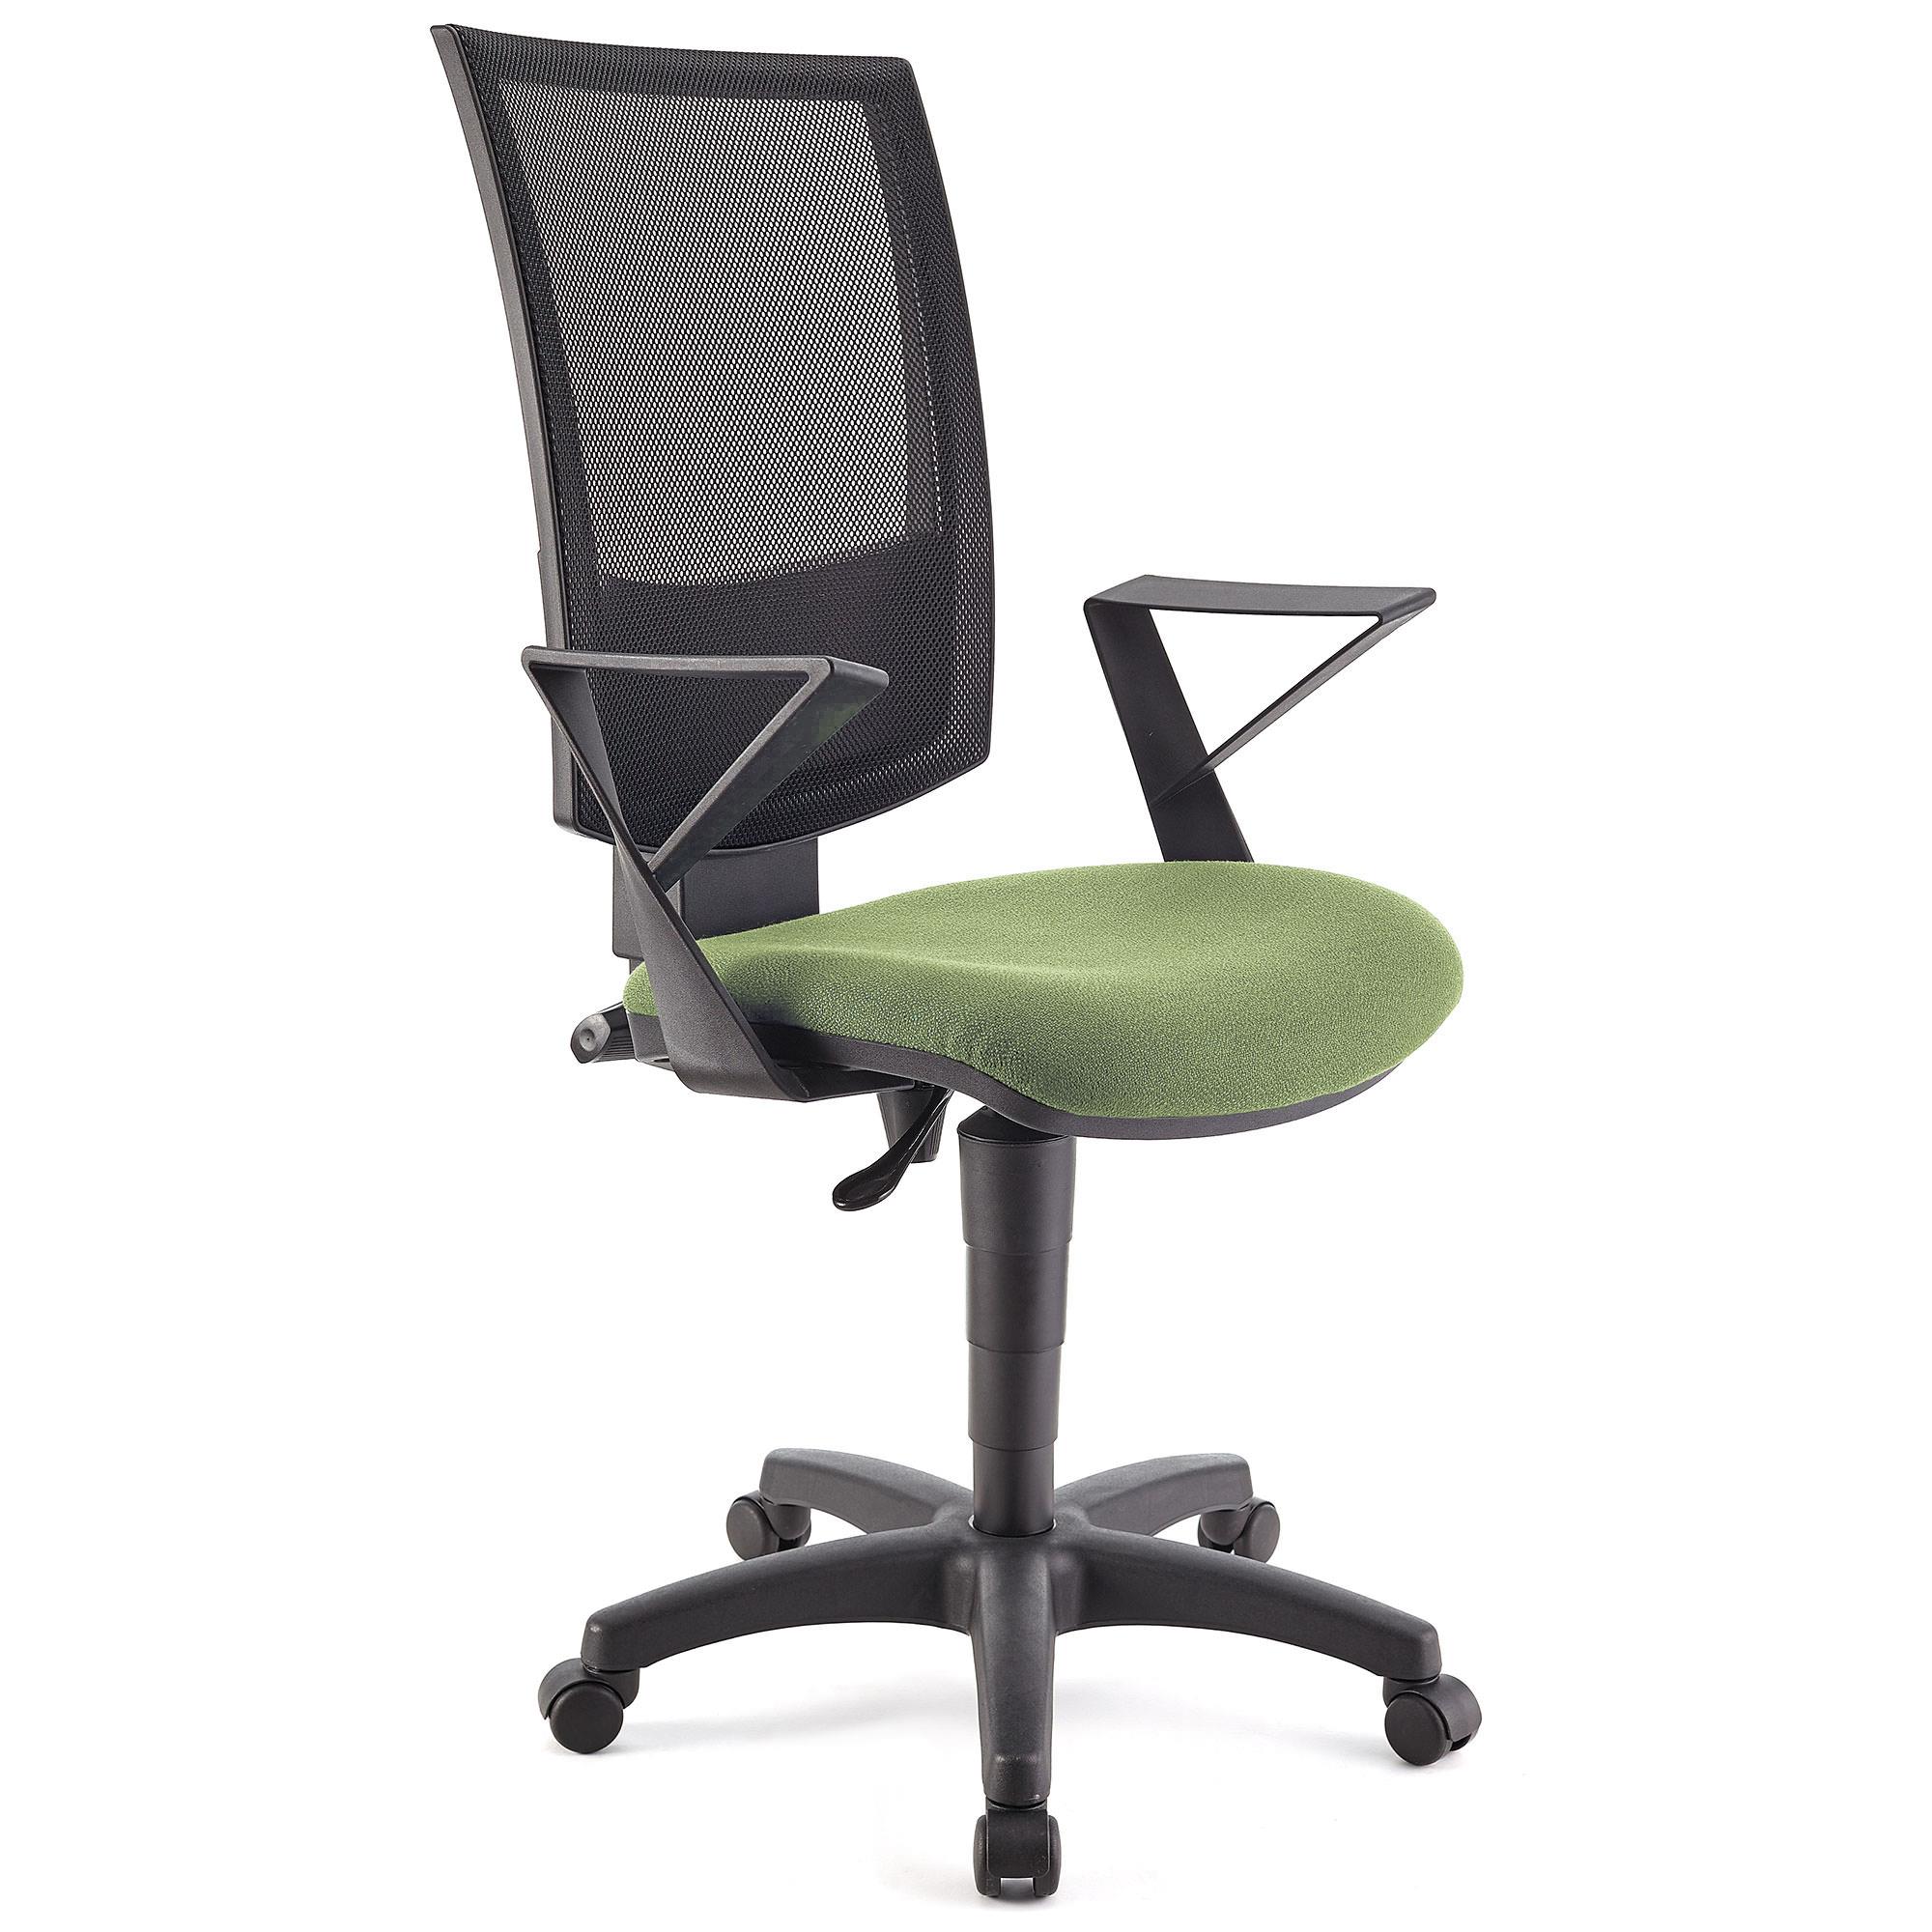 Bürostuhl PANDORA mit Armlehnen, Rückenlehne mit Netzbezug, dicke Polsterung, Farbe Grün